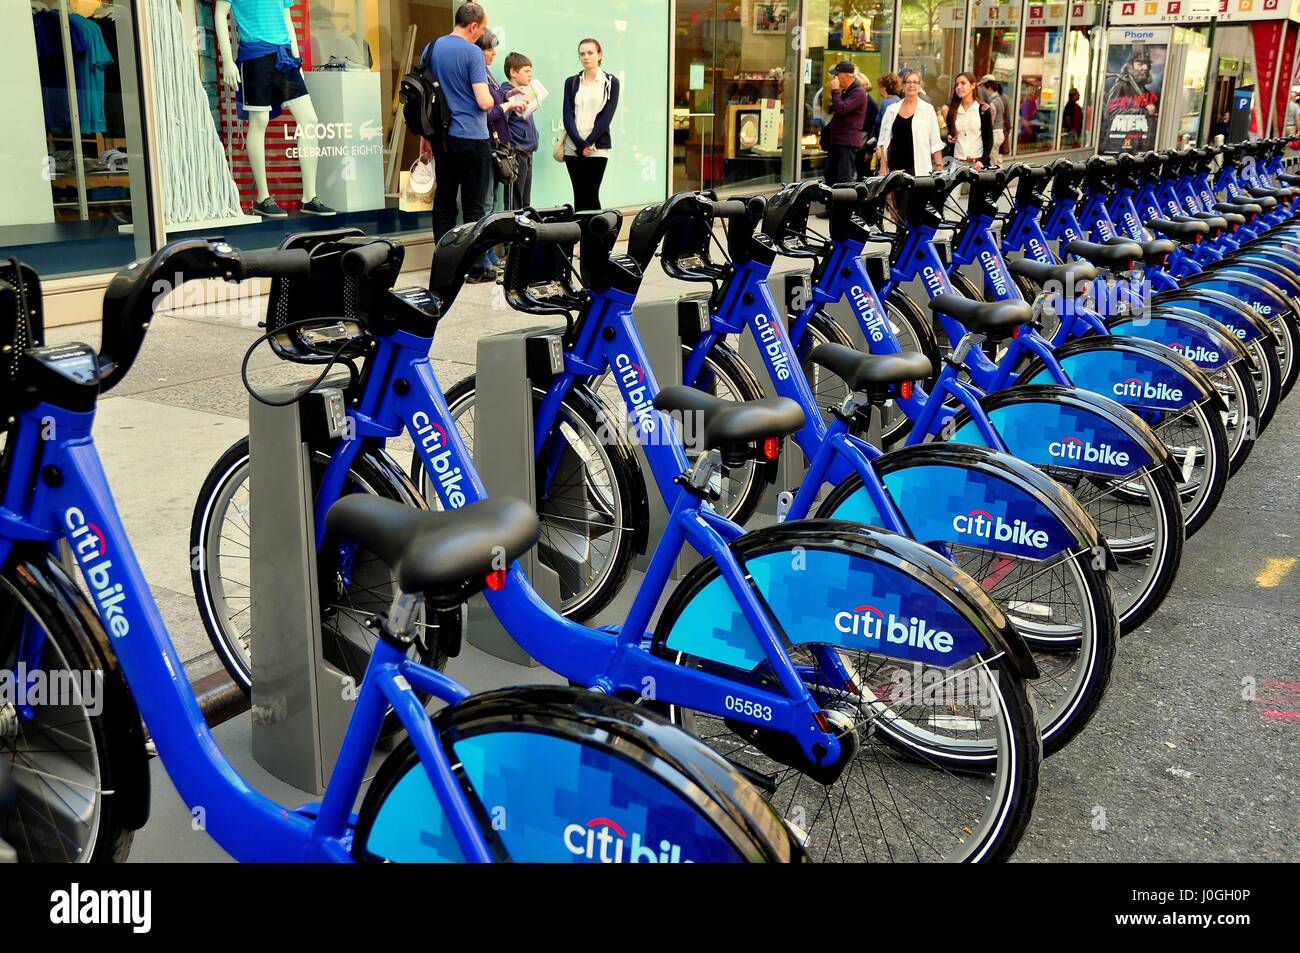 New York, NY - 27 mai 2013 : lignes d'Citibike bleu Location de vélos arborant le logo de la Citibank s'asseoir à une station d'ouest 49e Rue Banque D'Images